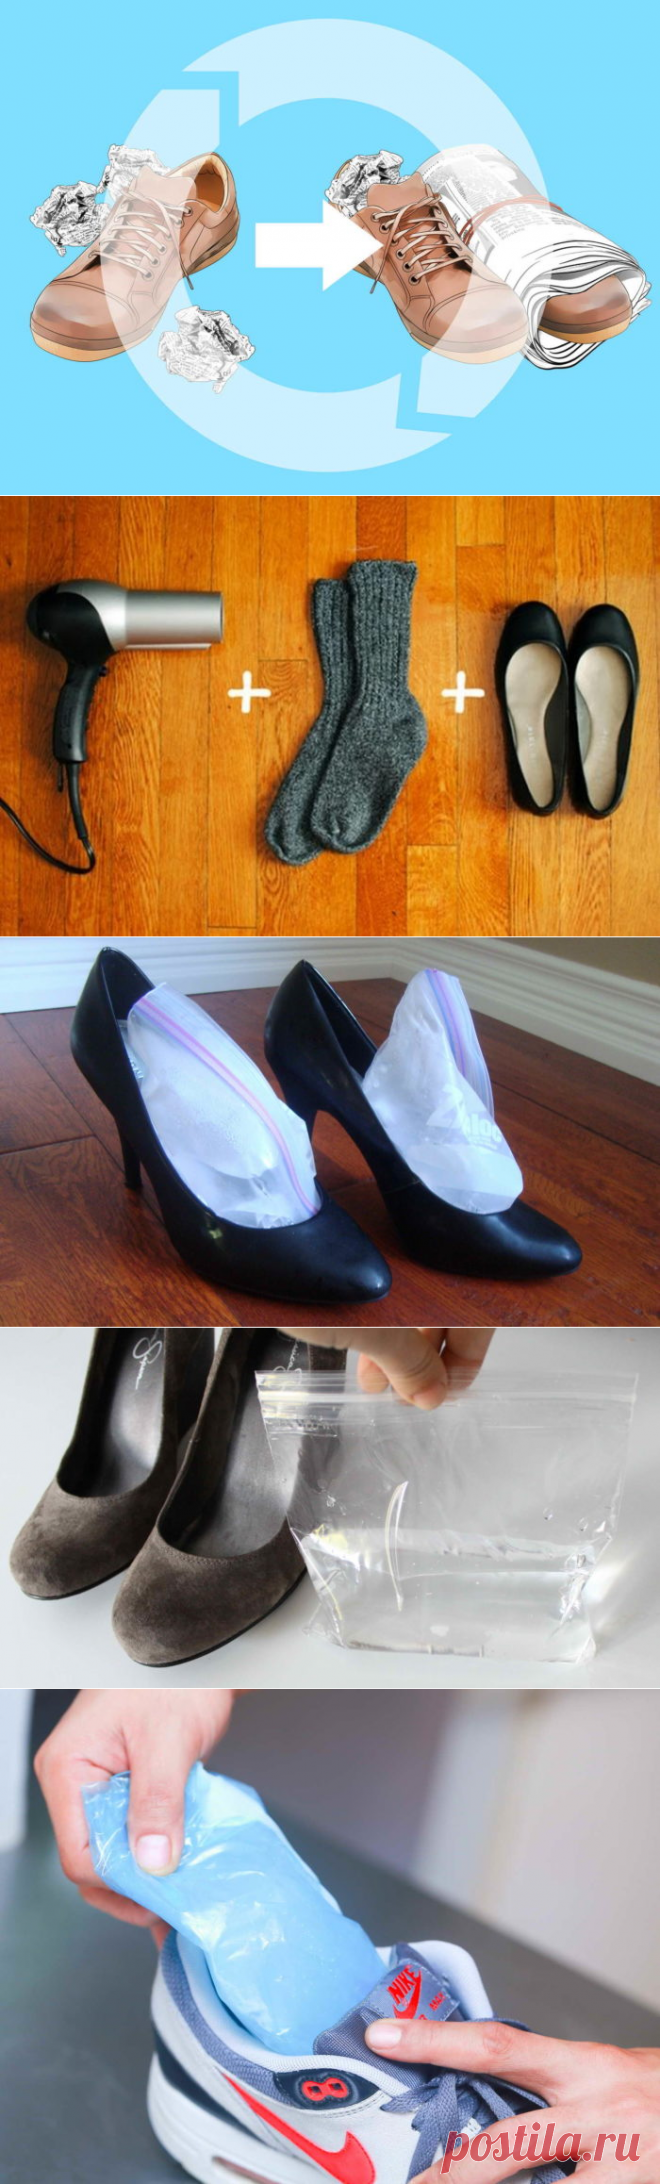 Способы растяжки обуви в домашних условиях: видео